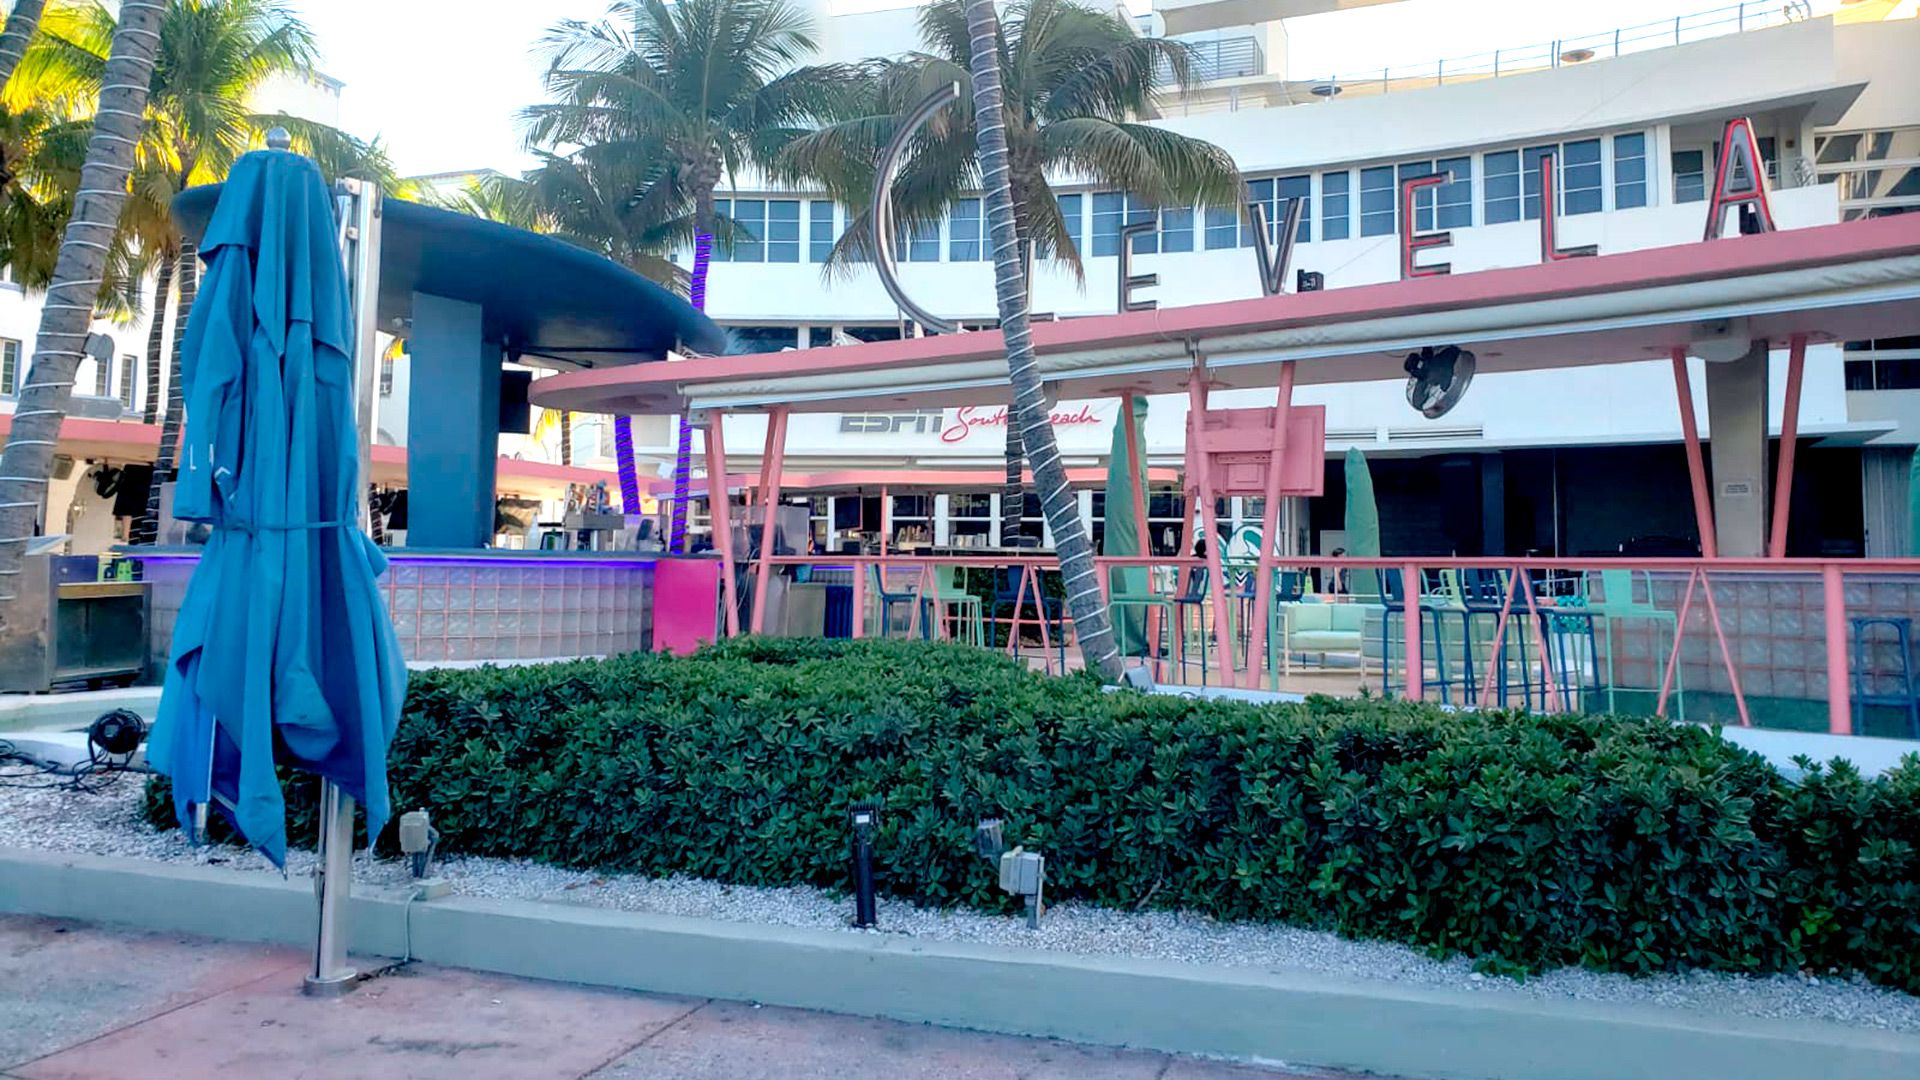 Una postal pocas veces vista en una ciudad como Miami: hoteles prácticamente vacíos, y bares y restaurantes cerrados. (Foto: Infobae)